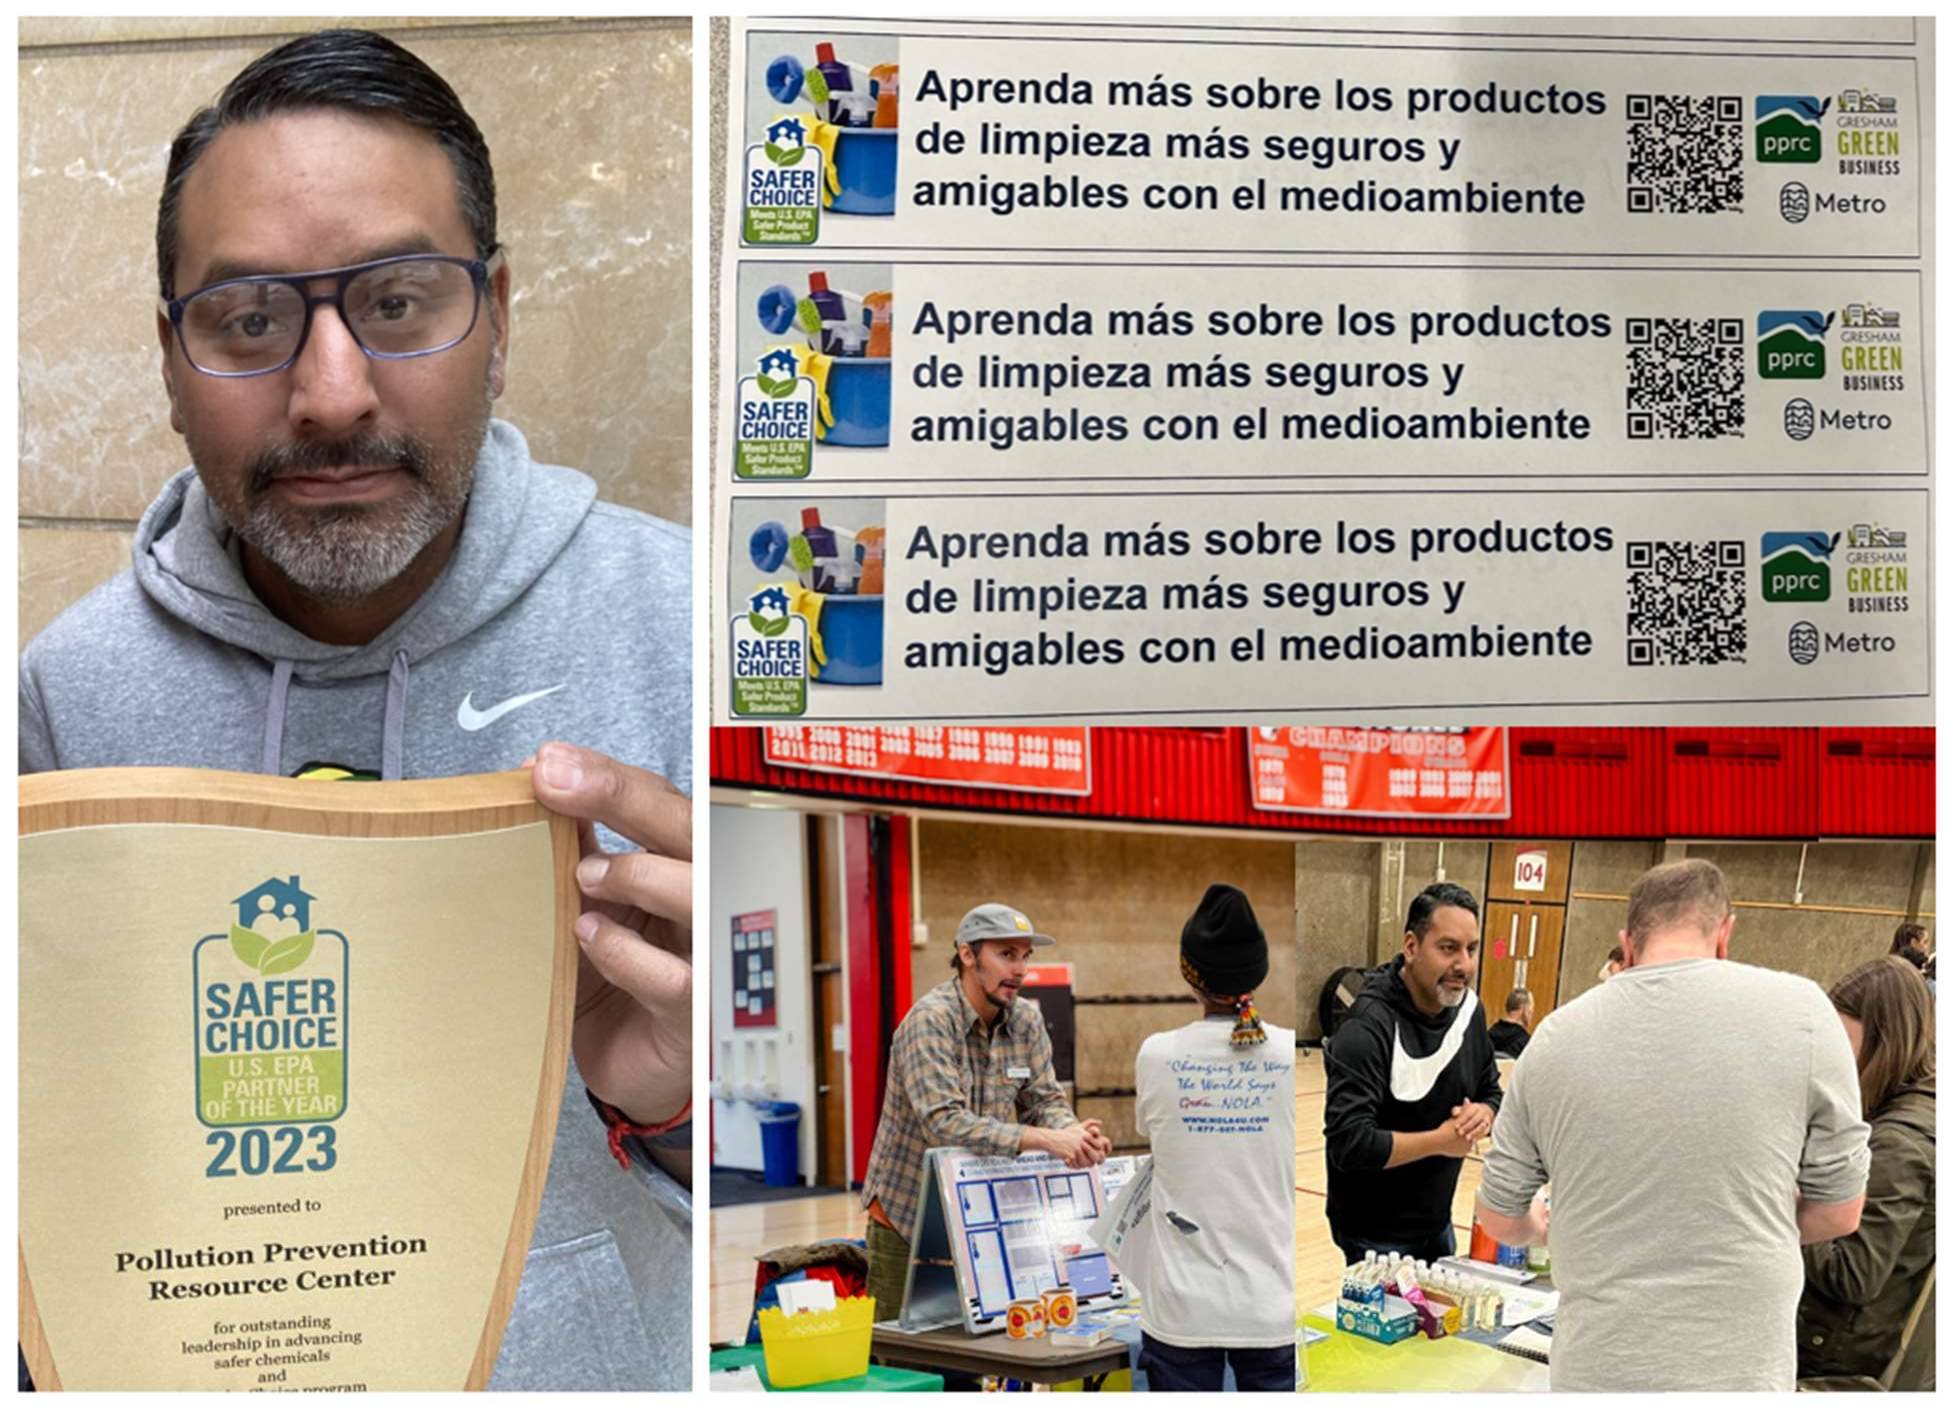 Safer Choice: La misión de Angel Contreras en la promoción de la seguridad en la limpieza